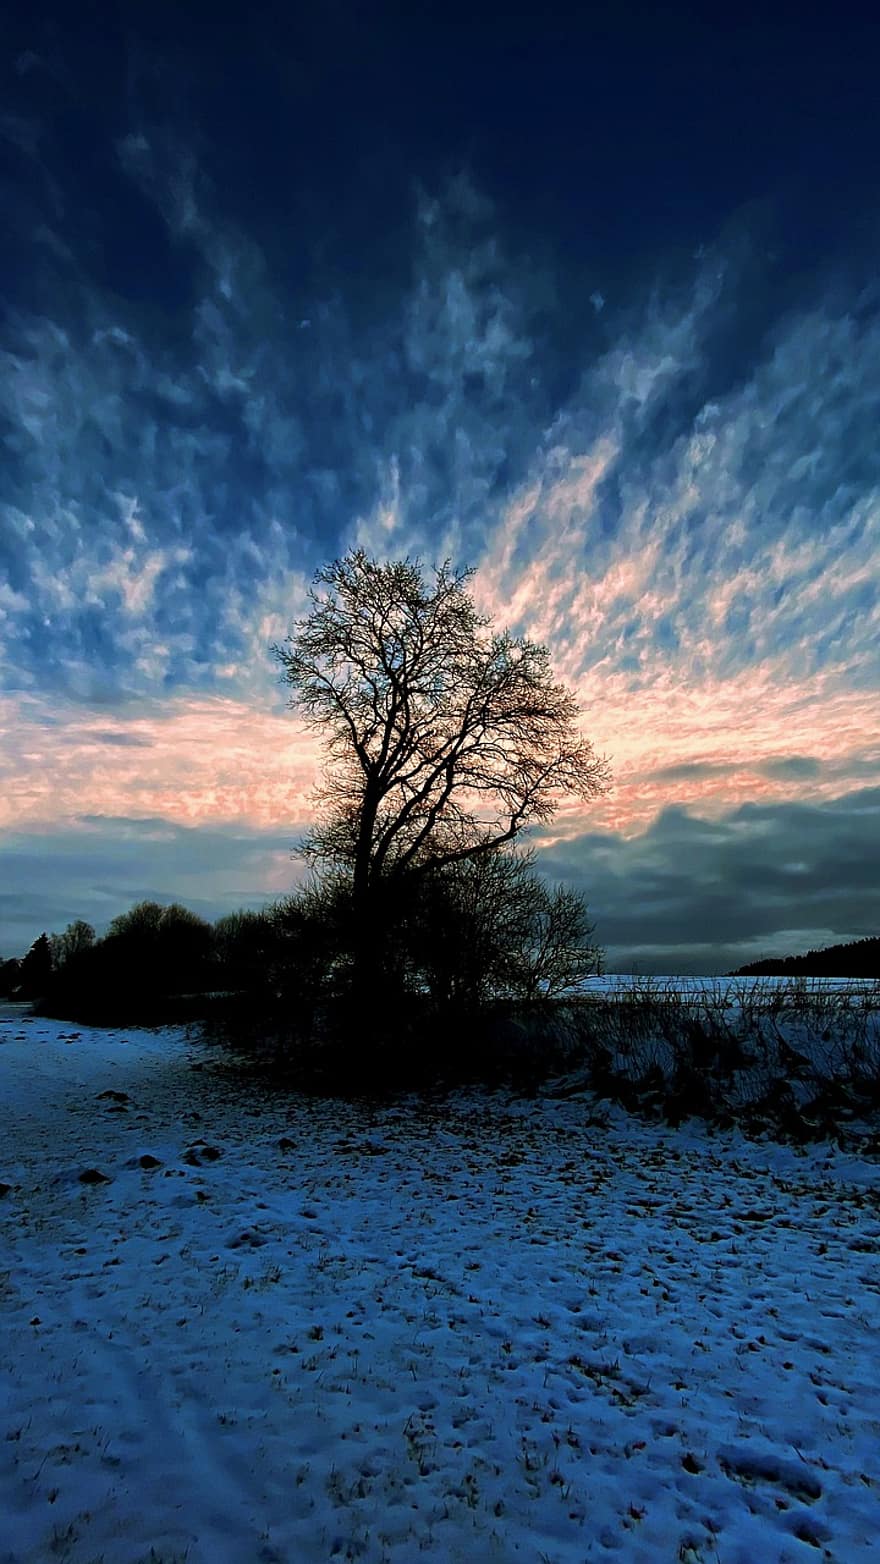 شجرة ، المناظر الطبيعية في فصل الشتاء ، شتاء ، ثلج ، مزاج ، جو مسائي ، الجنة ، سحاب ، طبيعة ، ضوء ، أزرق